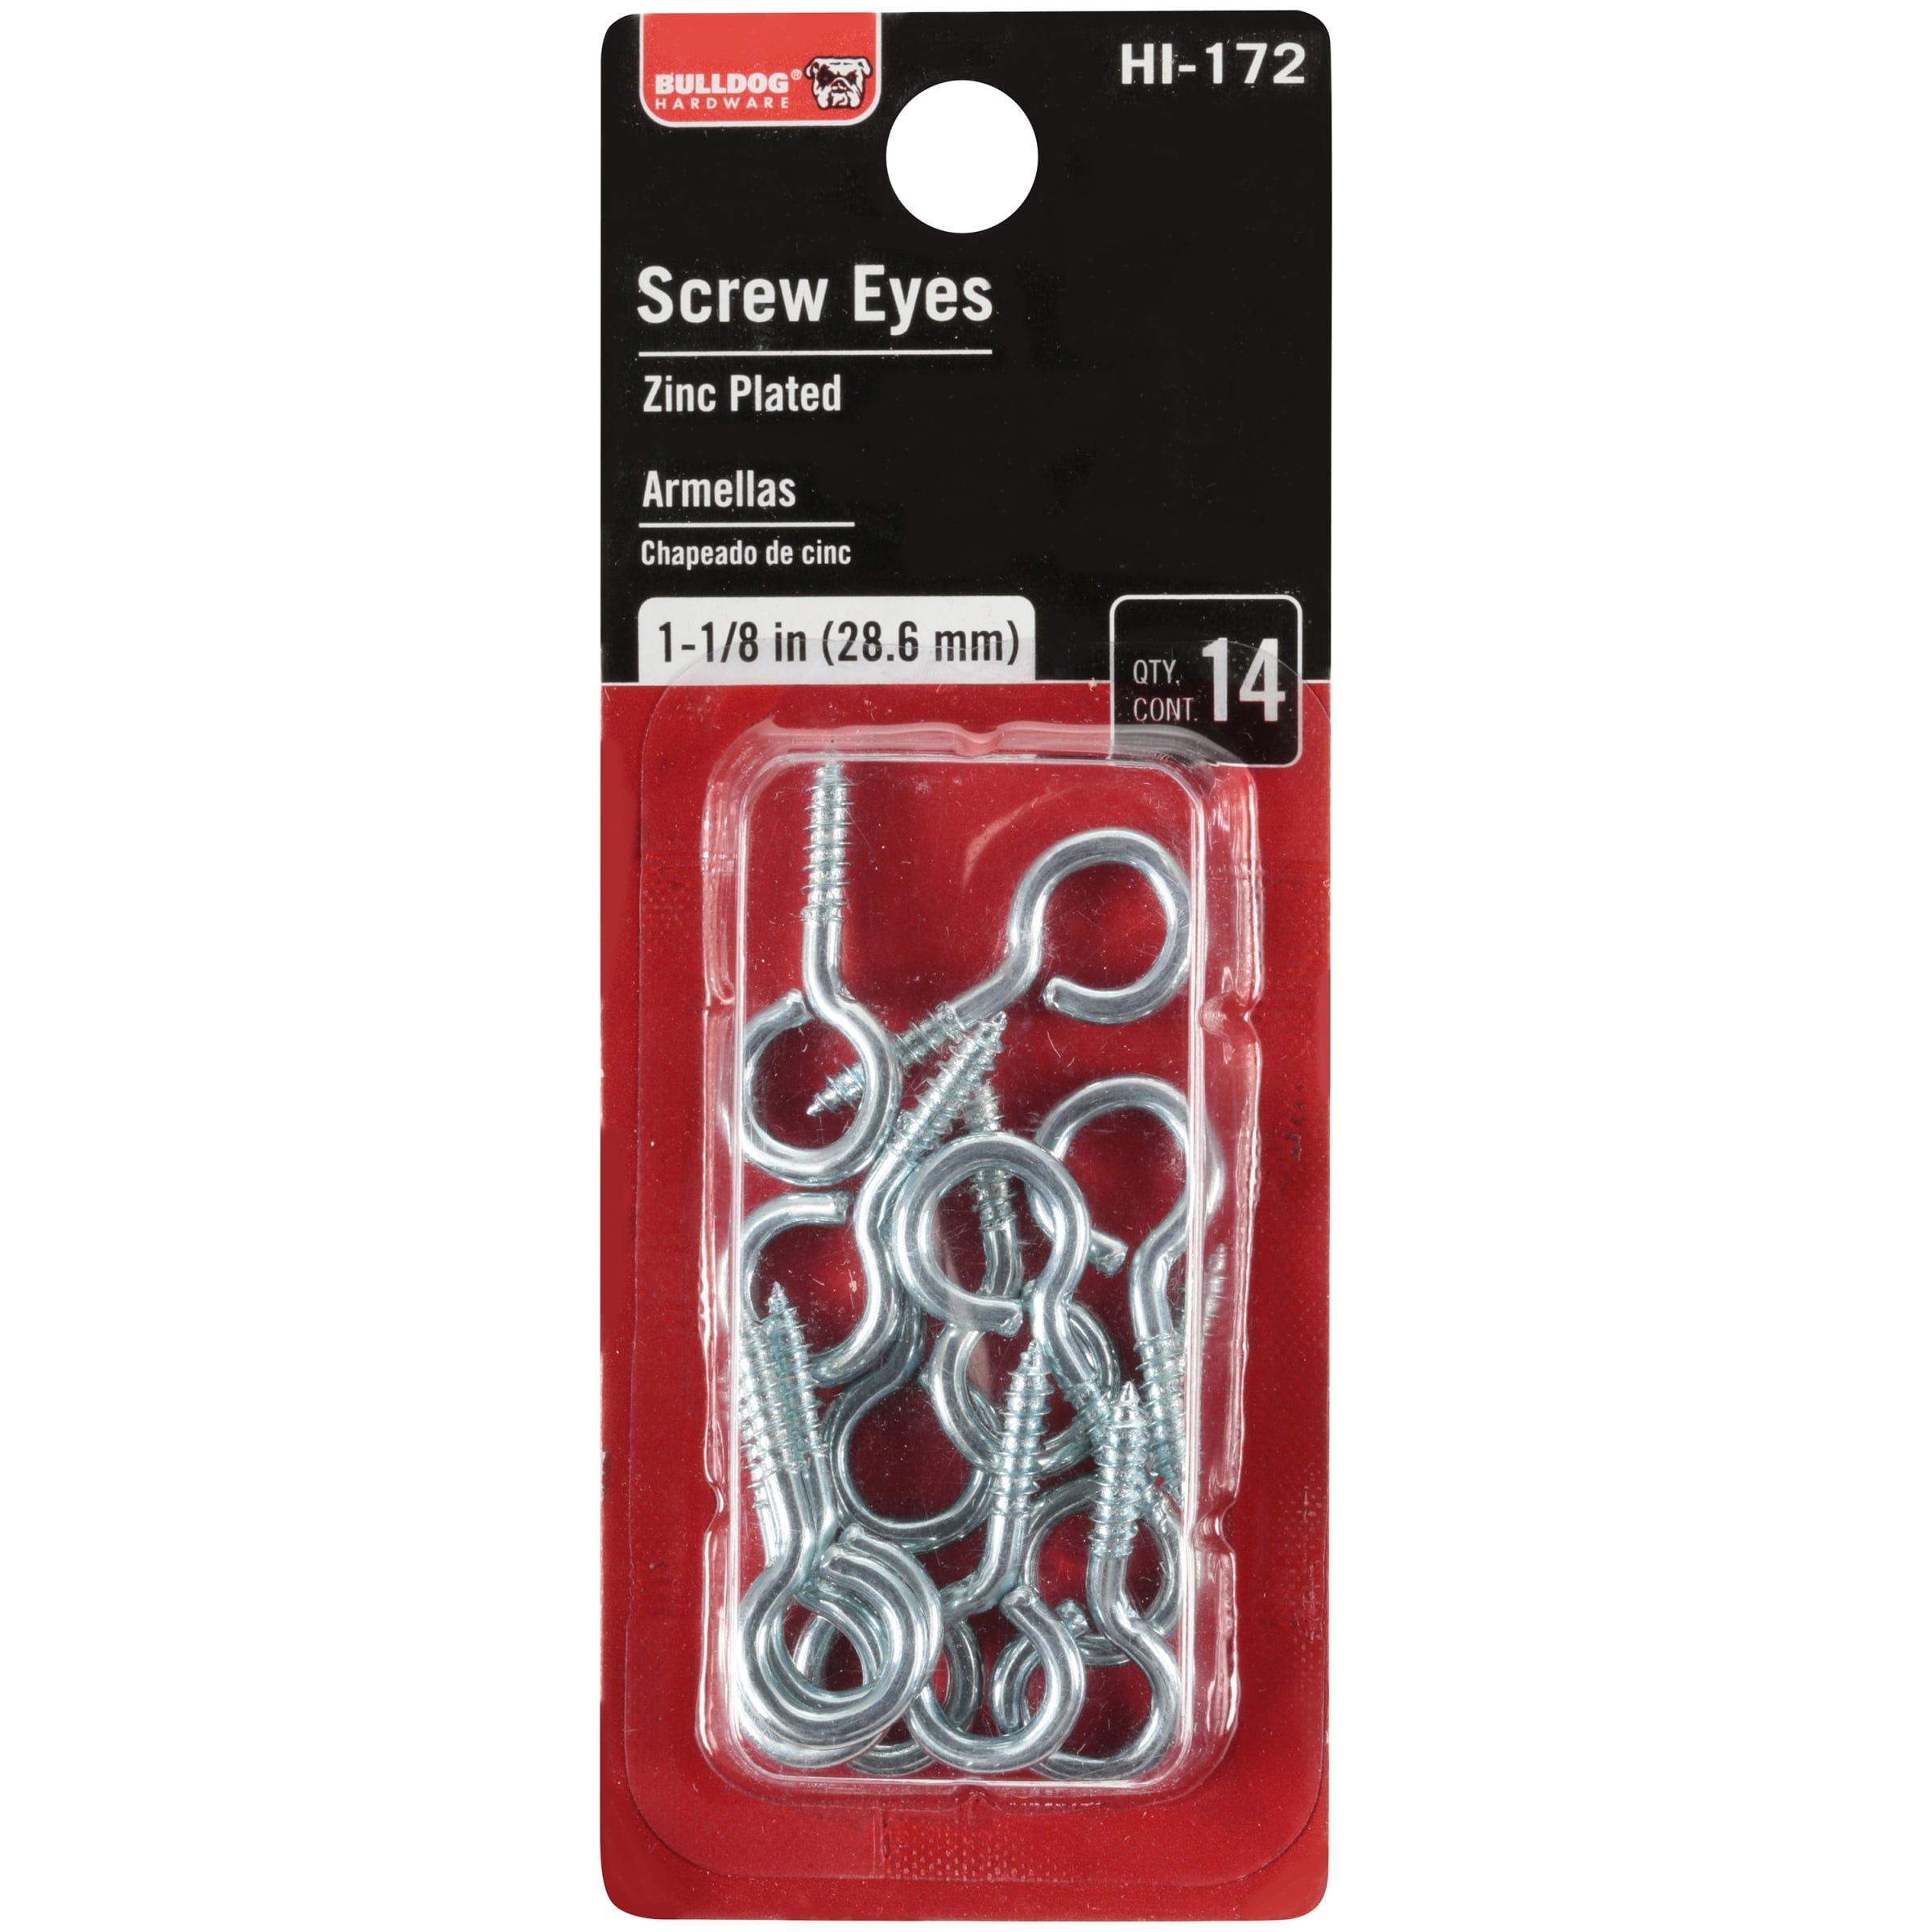 Hooks and Screw Eyes - Ace Hardware